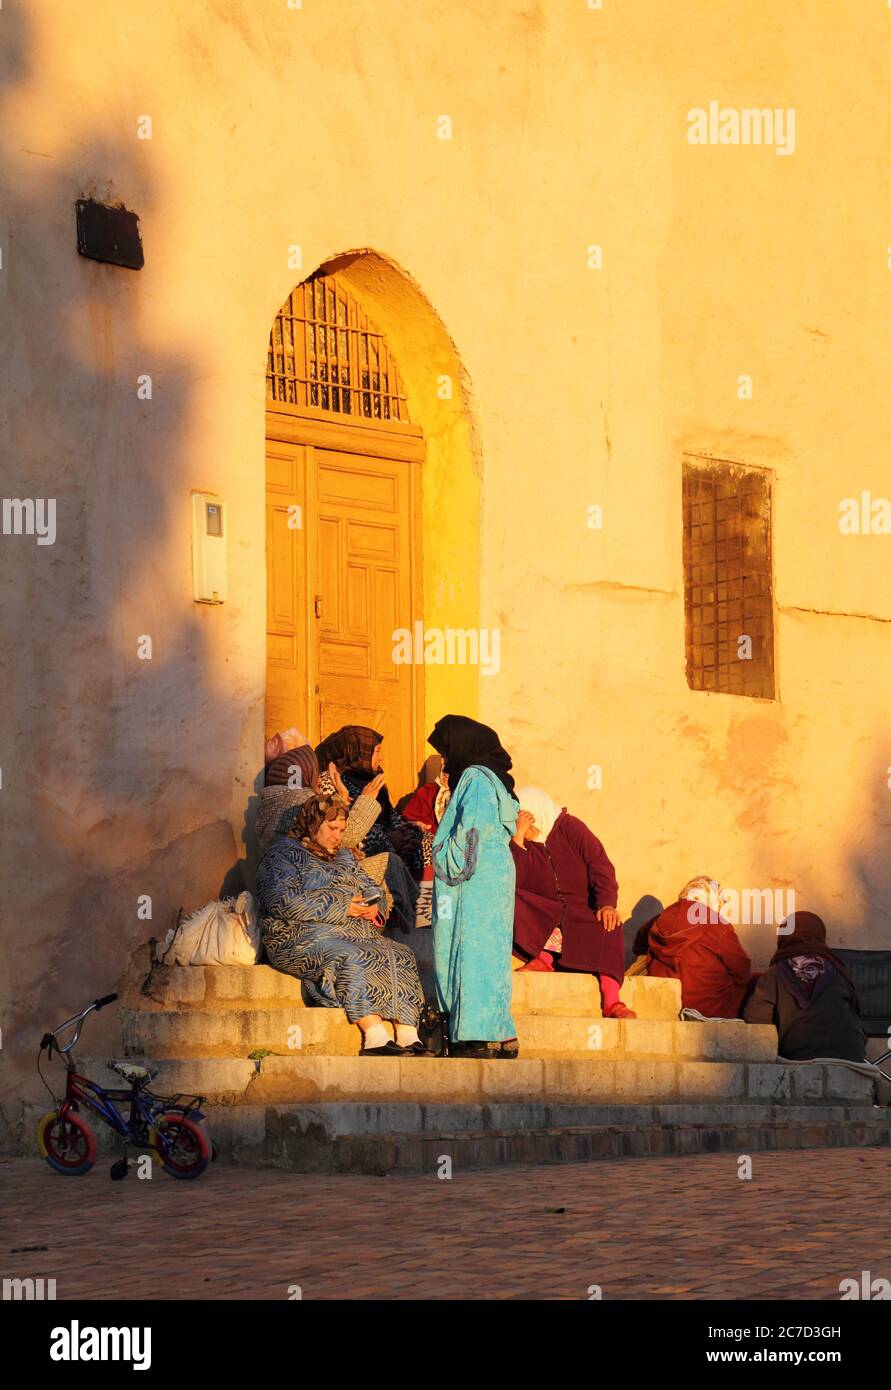 Un groupe de femmes marocaines habillées, assis sur des marches en fin d'après-midi sous le soleil d'hiver. 22 décembre 2013 à Meknes, Maroc. Site de l'UNESCO. Banque D'Images